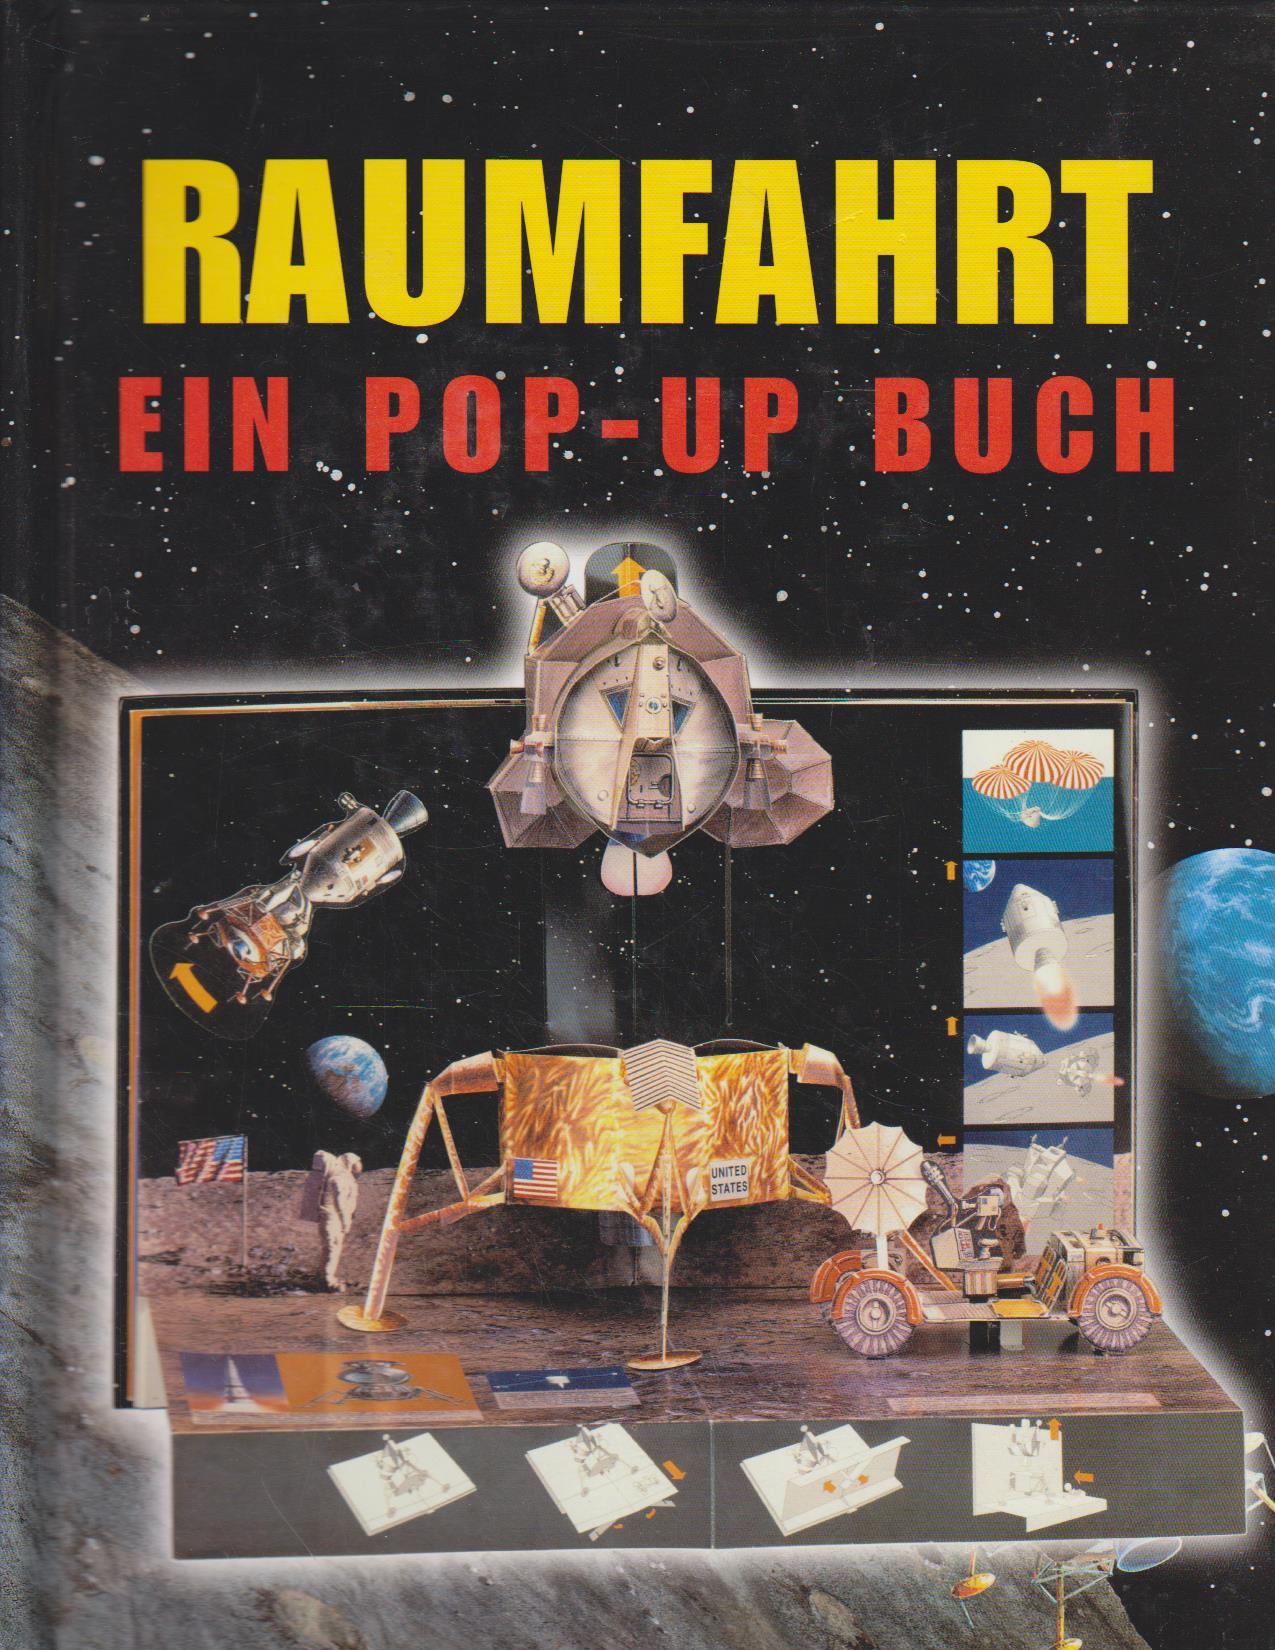 Raumfahrt : ein Pop-up-Buch / [Text, Ill., Design und Papiertechnik: Anton Radevsky. Übers. aus dem Engl.: Bernd Uhlmann] - Radevsky, Anton